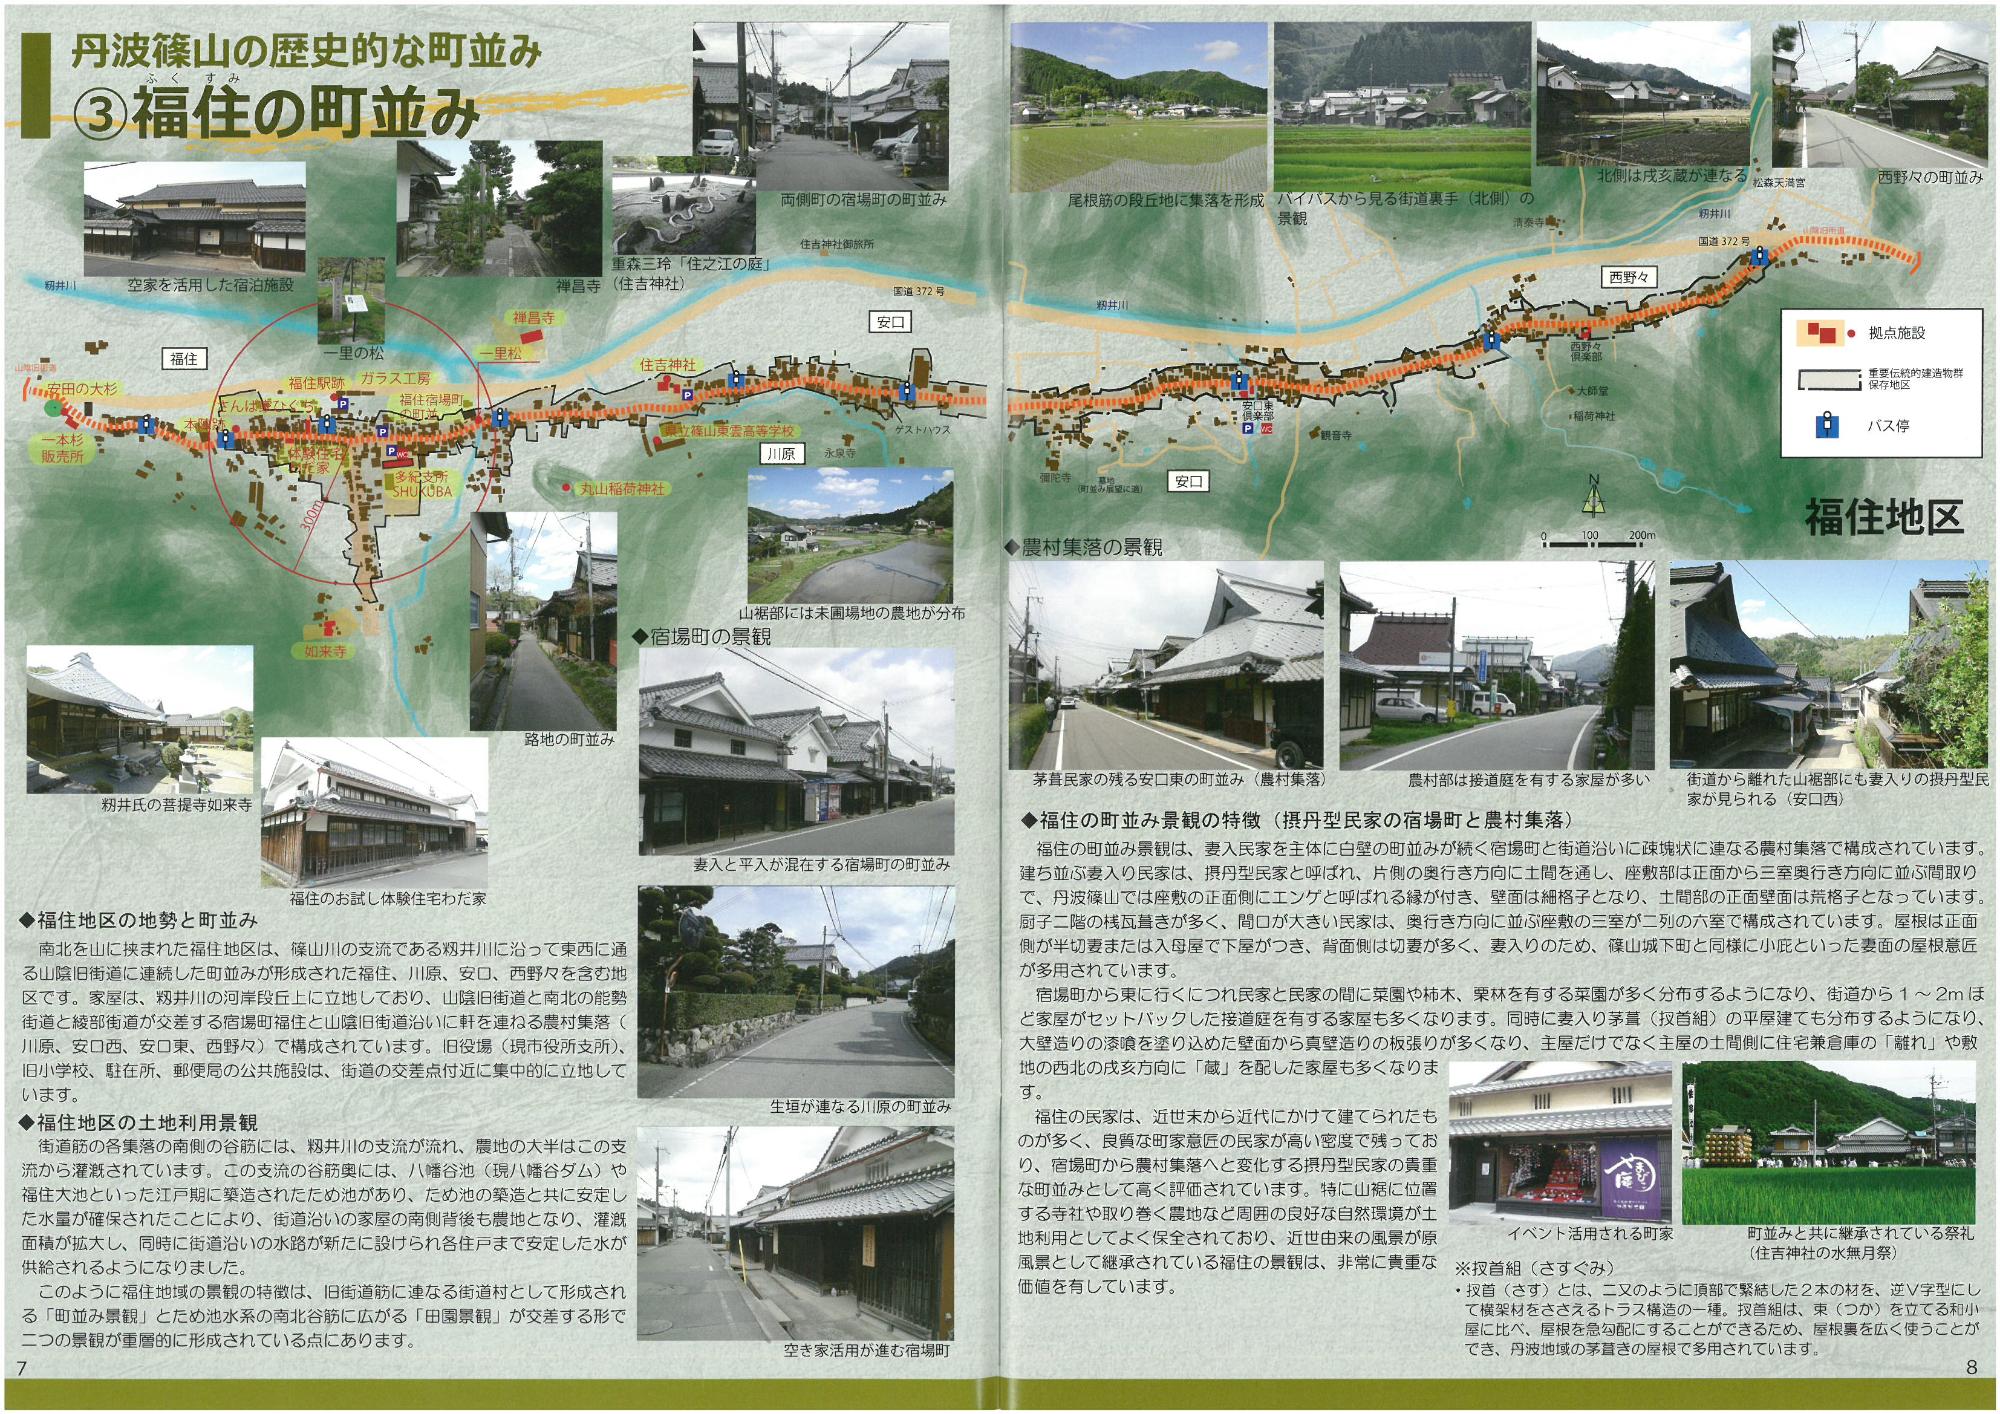 見開きで福住の町並みを紹介したページ。地図と町並みの写真、説明が書いてある。